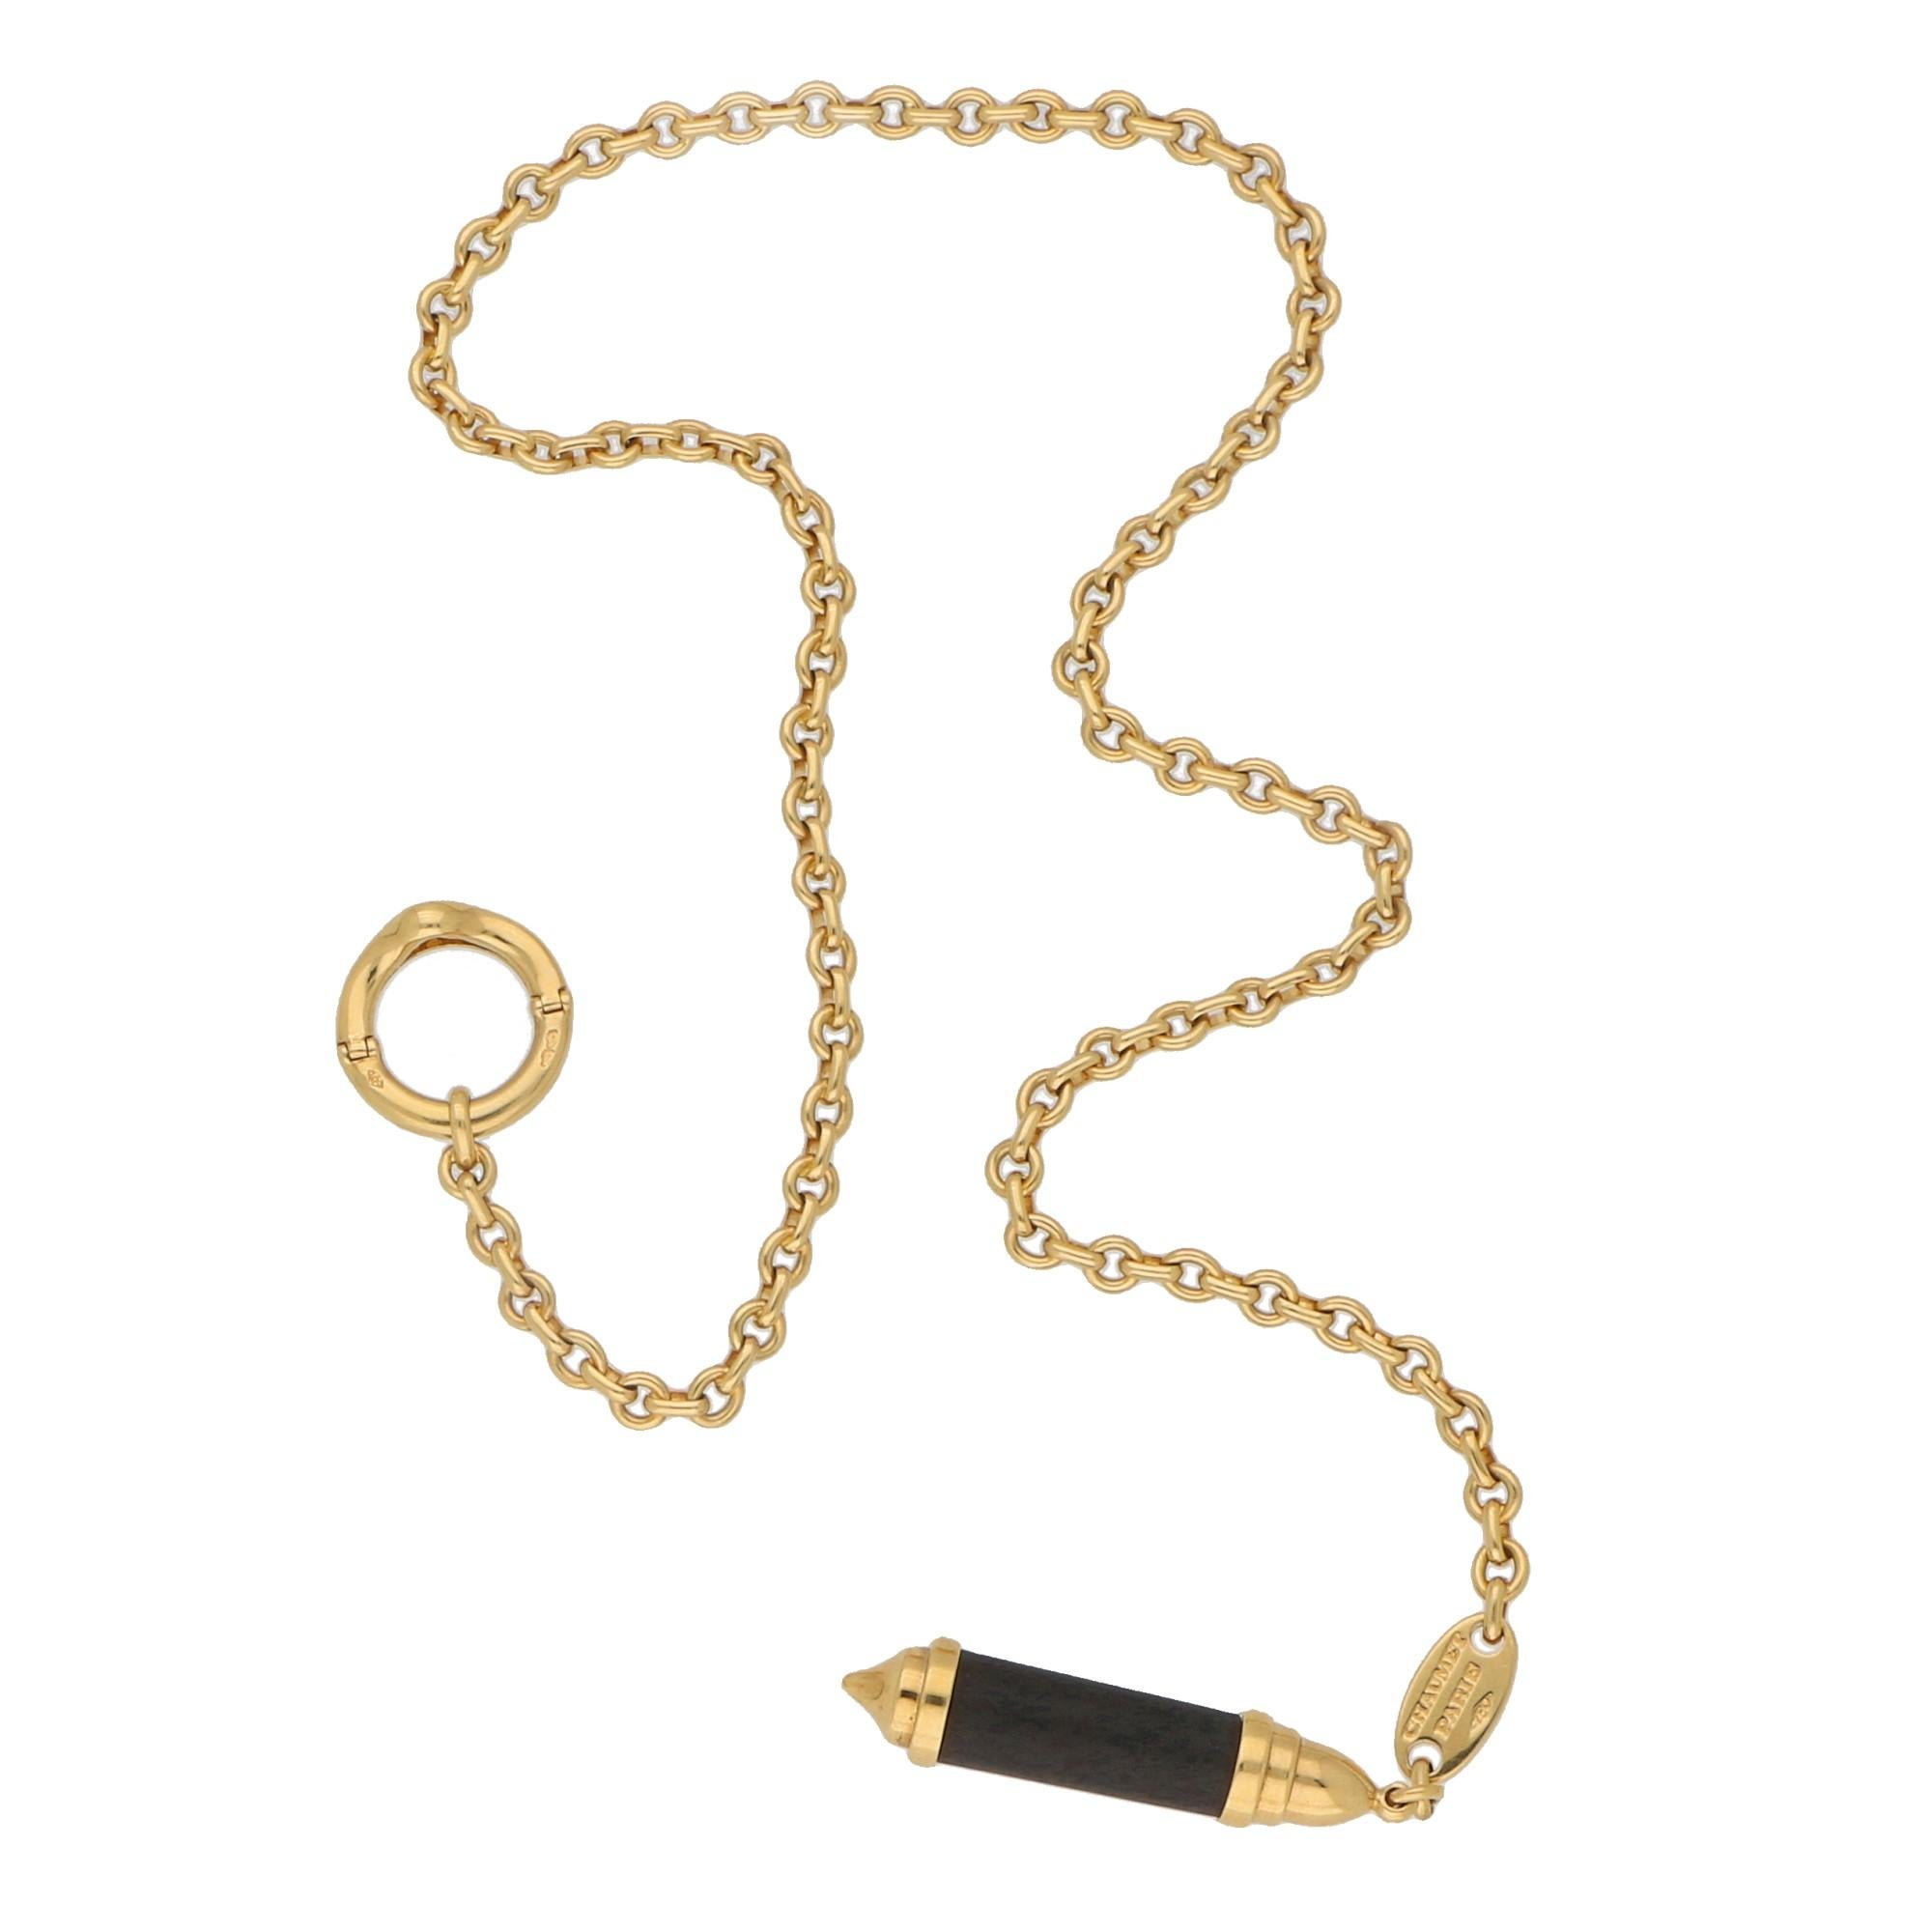 Women's or Men's Chaumet Lariat Snakewood Necklace in 18 Karat Yellow Gold